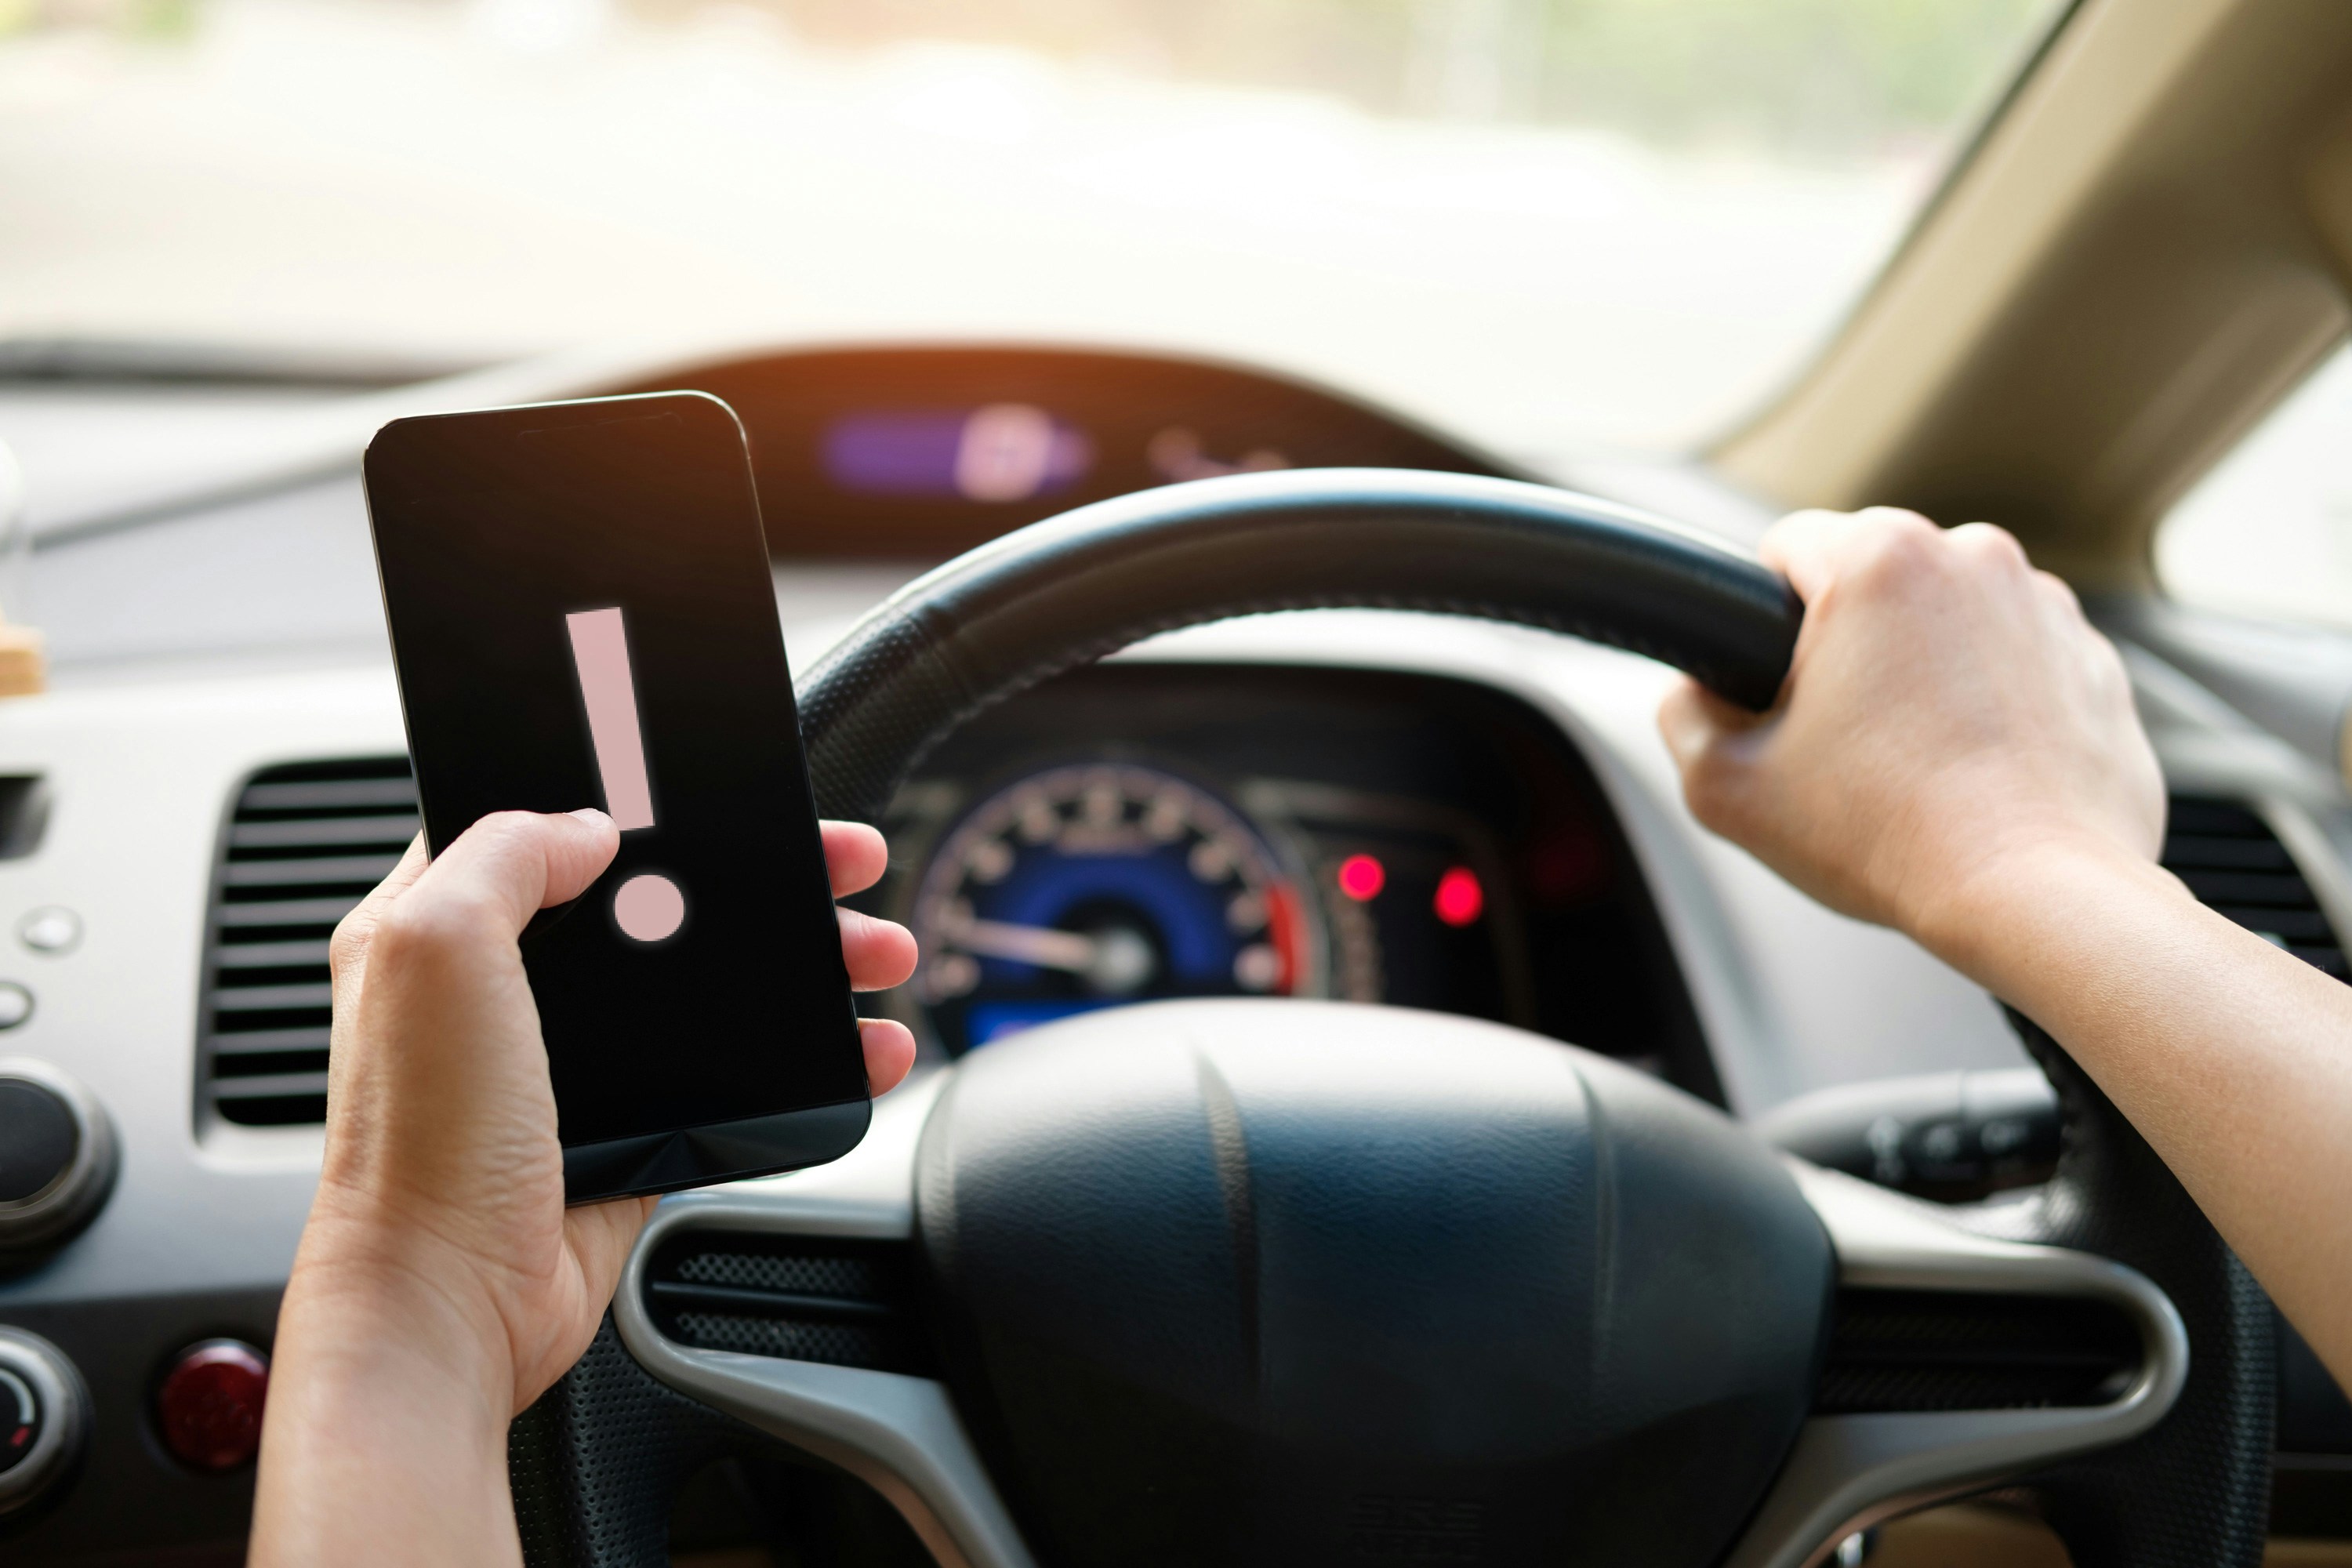 Smartphone am Steuer: Enorme Gefahren durch Ablenkung im Auto